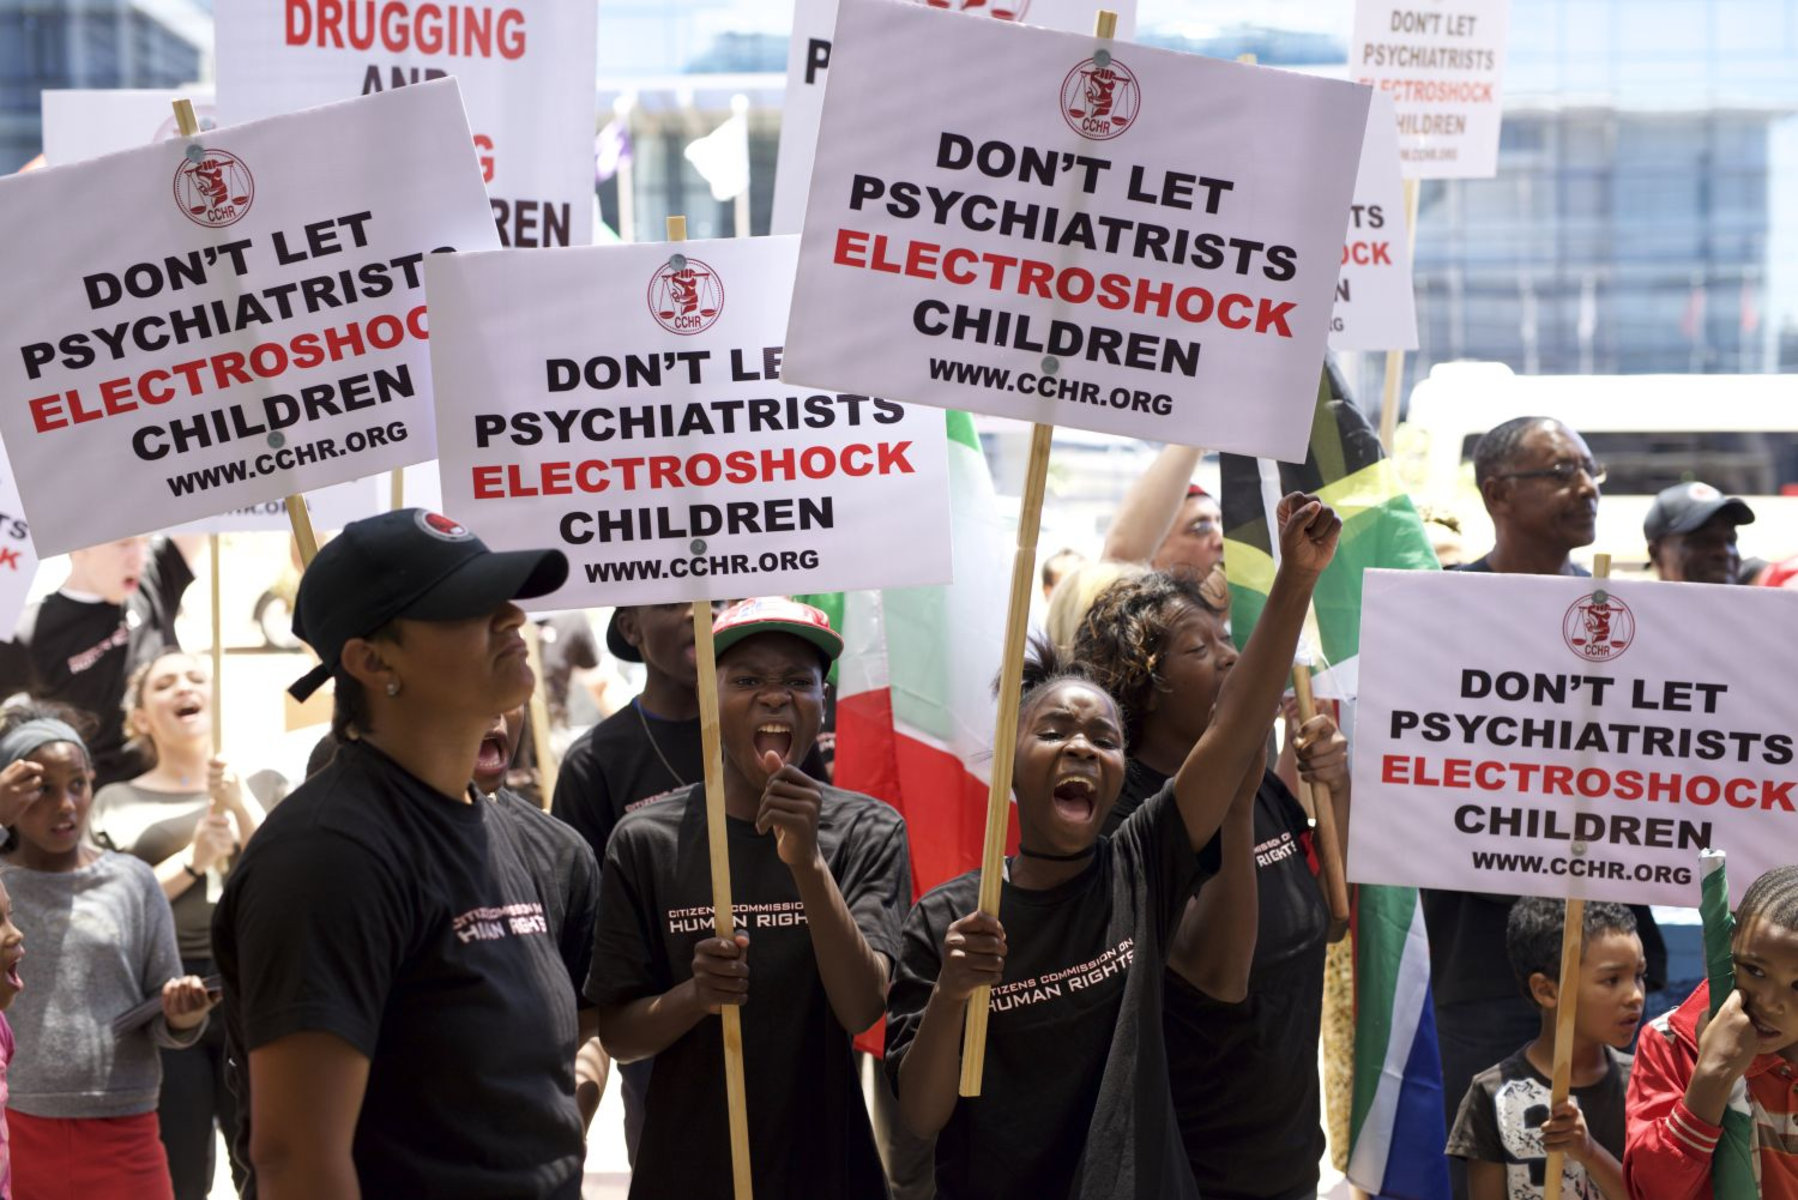 La CCDH proteste contre la prescription de « drogues » aux enfants